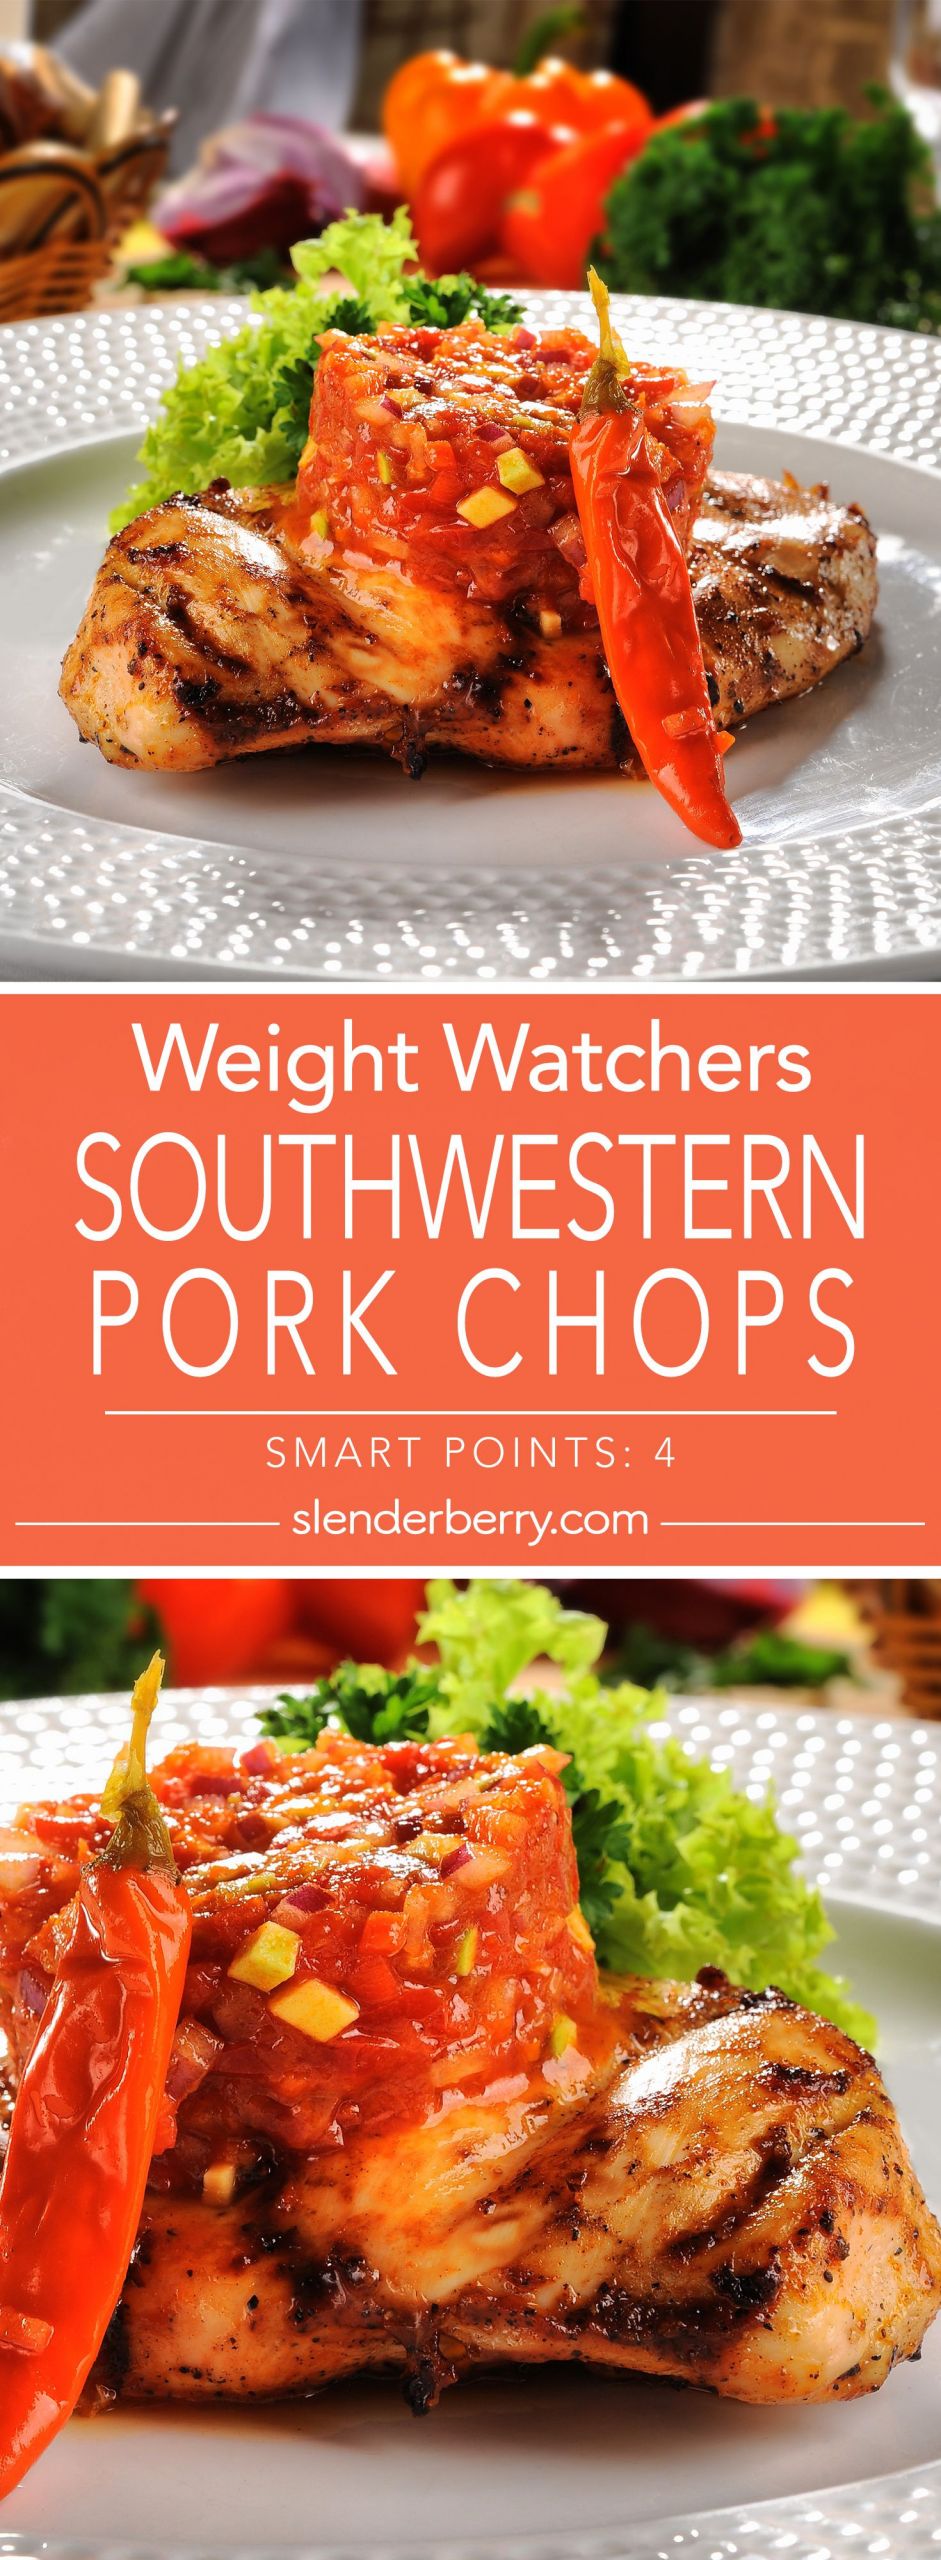 Low Calorie Recipes For Pork Chops
 Southwestern Pork Chops Recipe